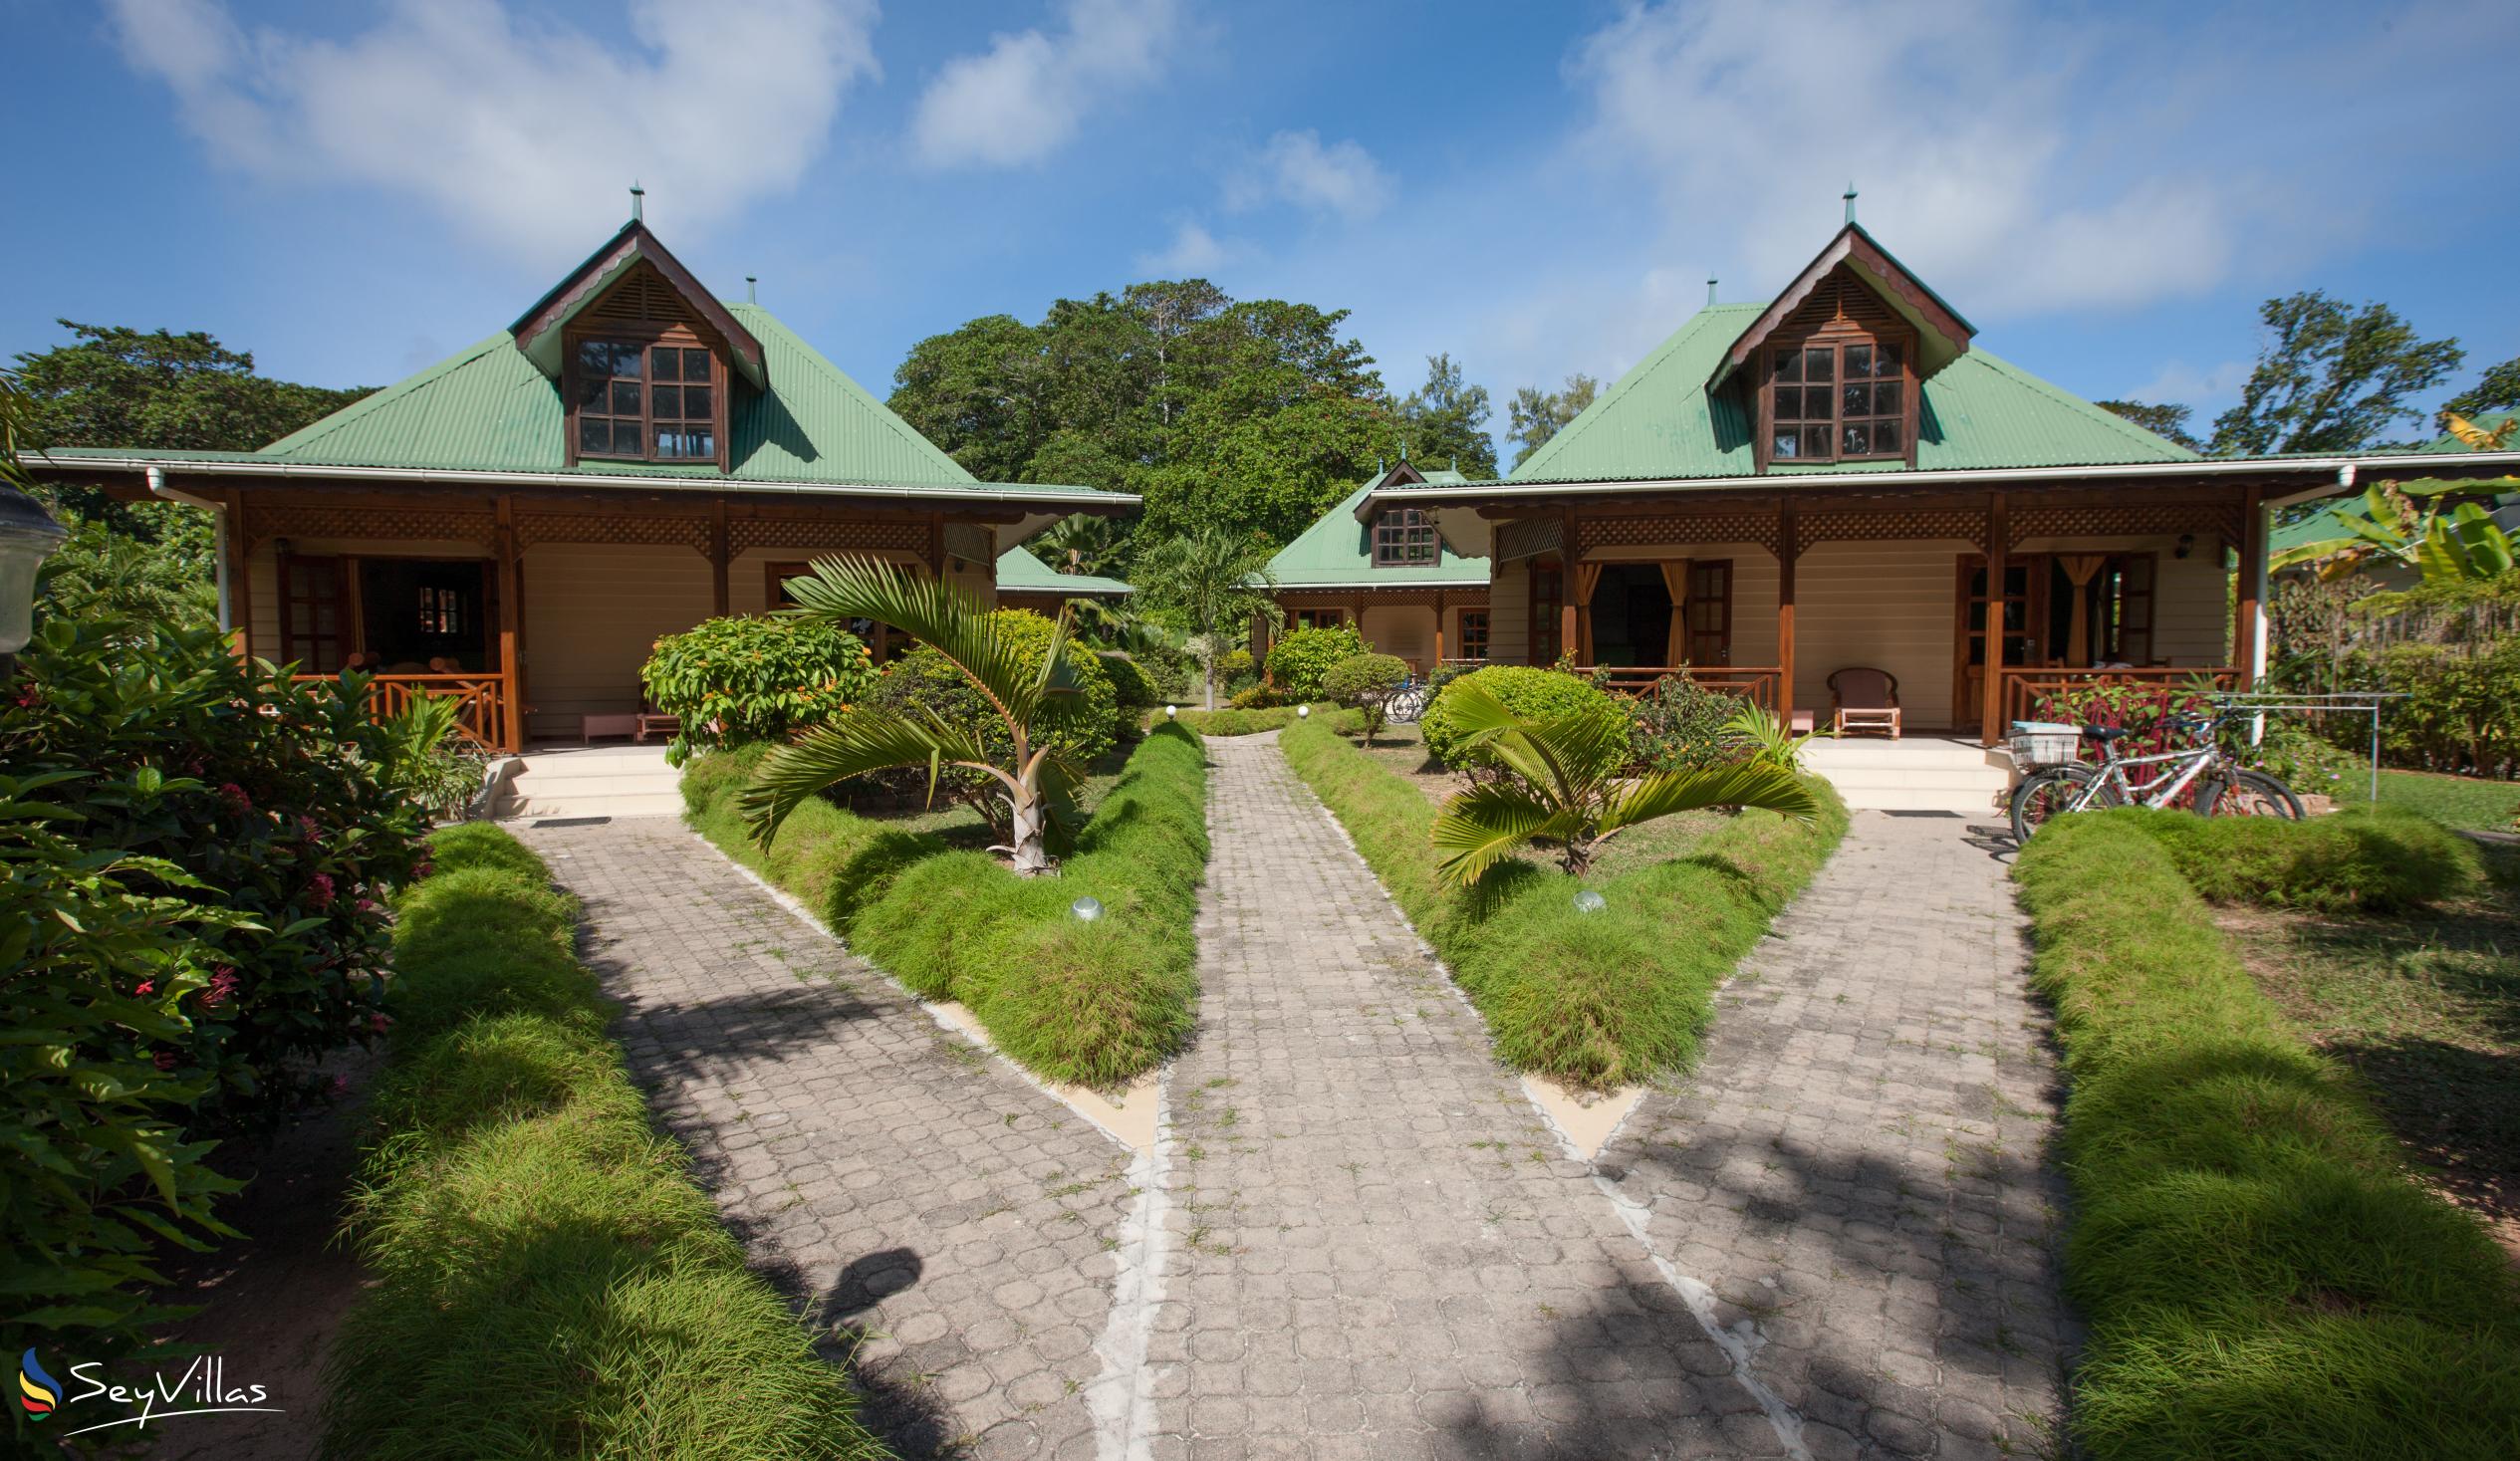 Photo 1: Villa Creole - Outdoor area - La Digue (Seychelles)